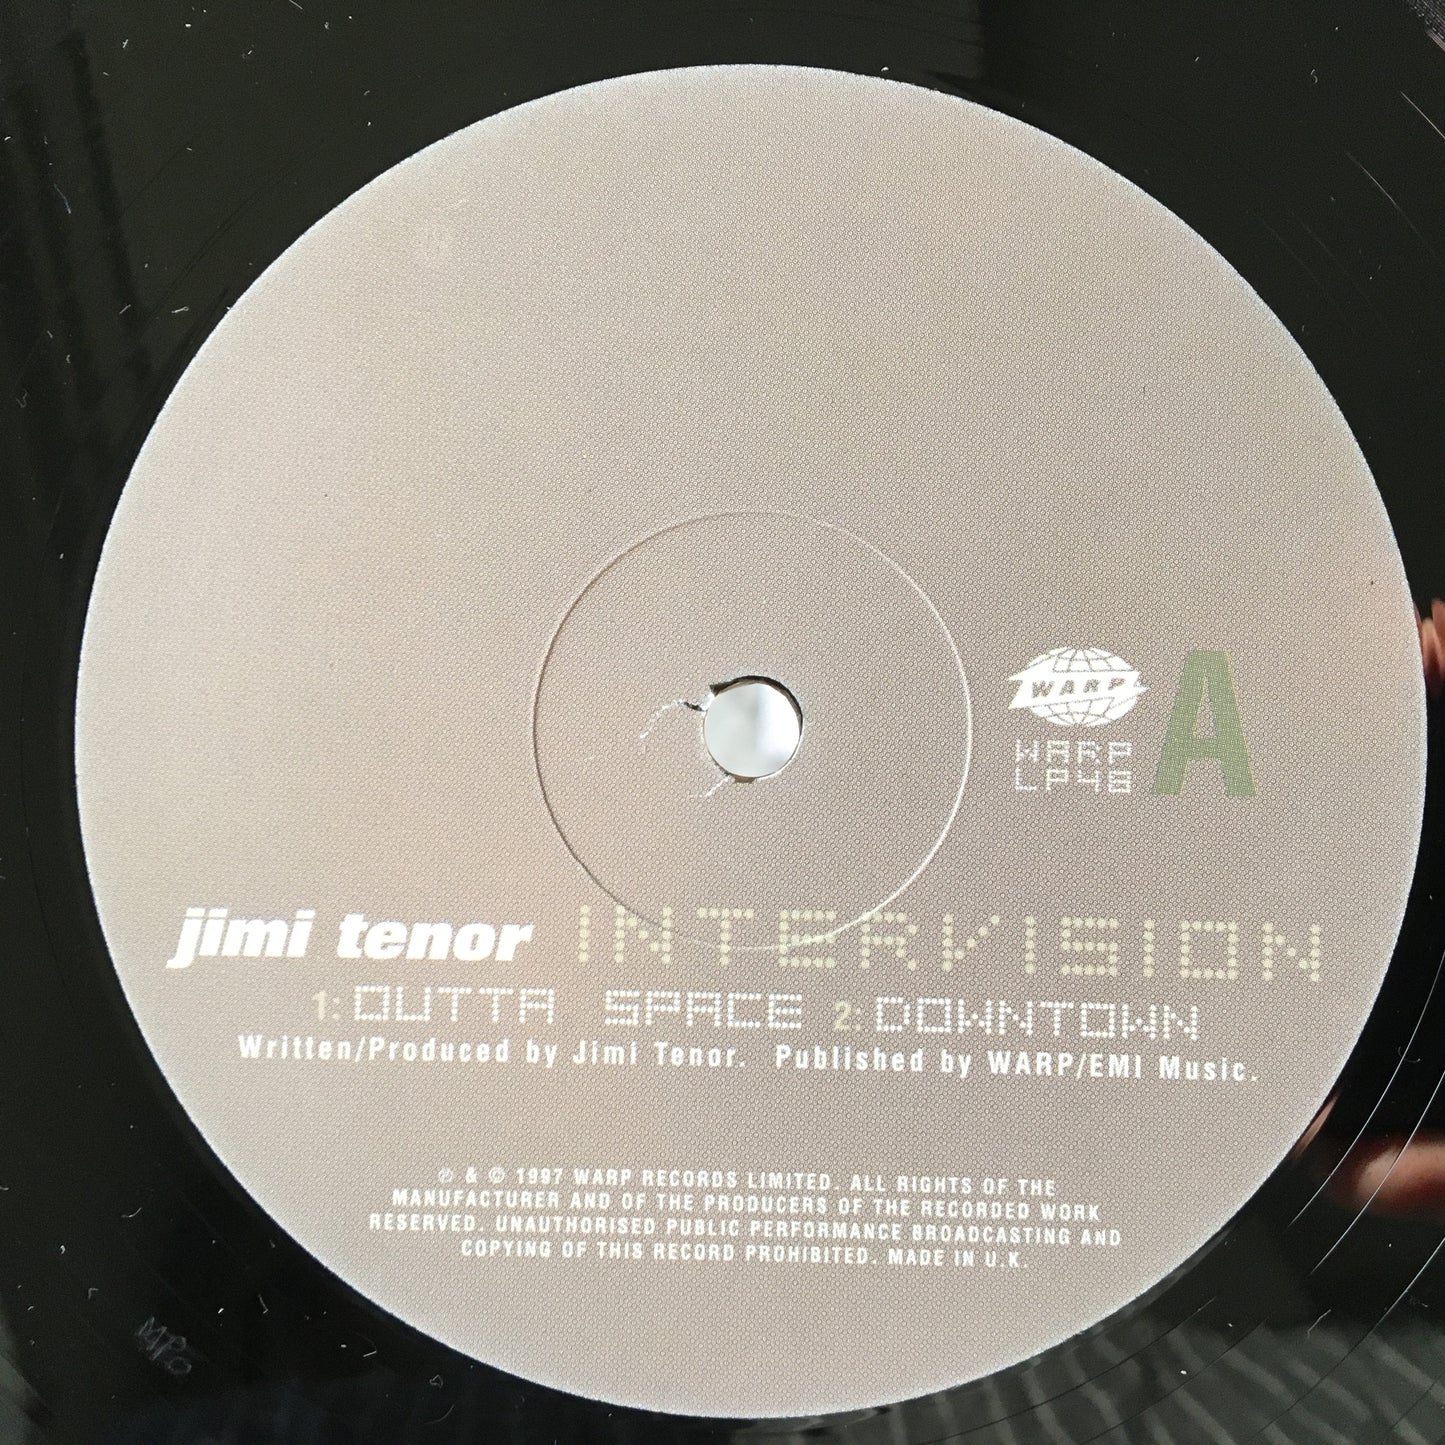 Jimi Tenor – Intervision